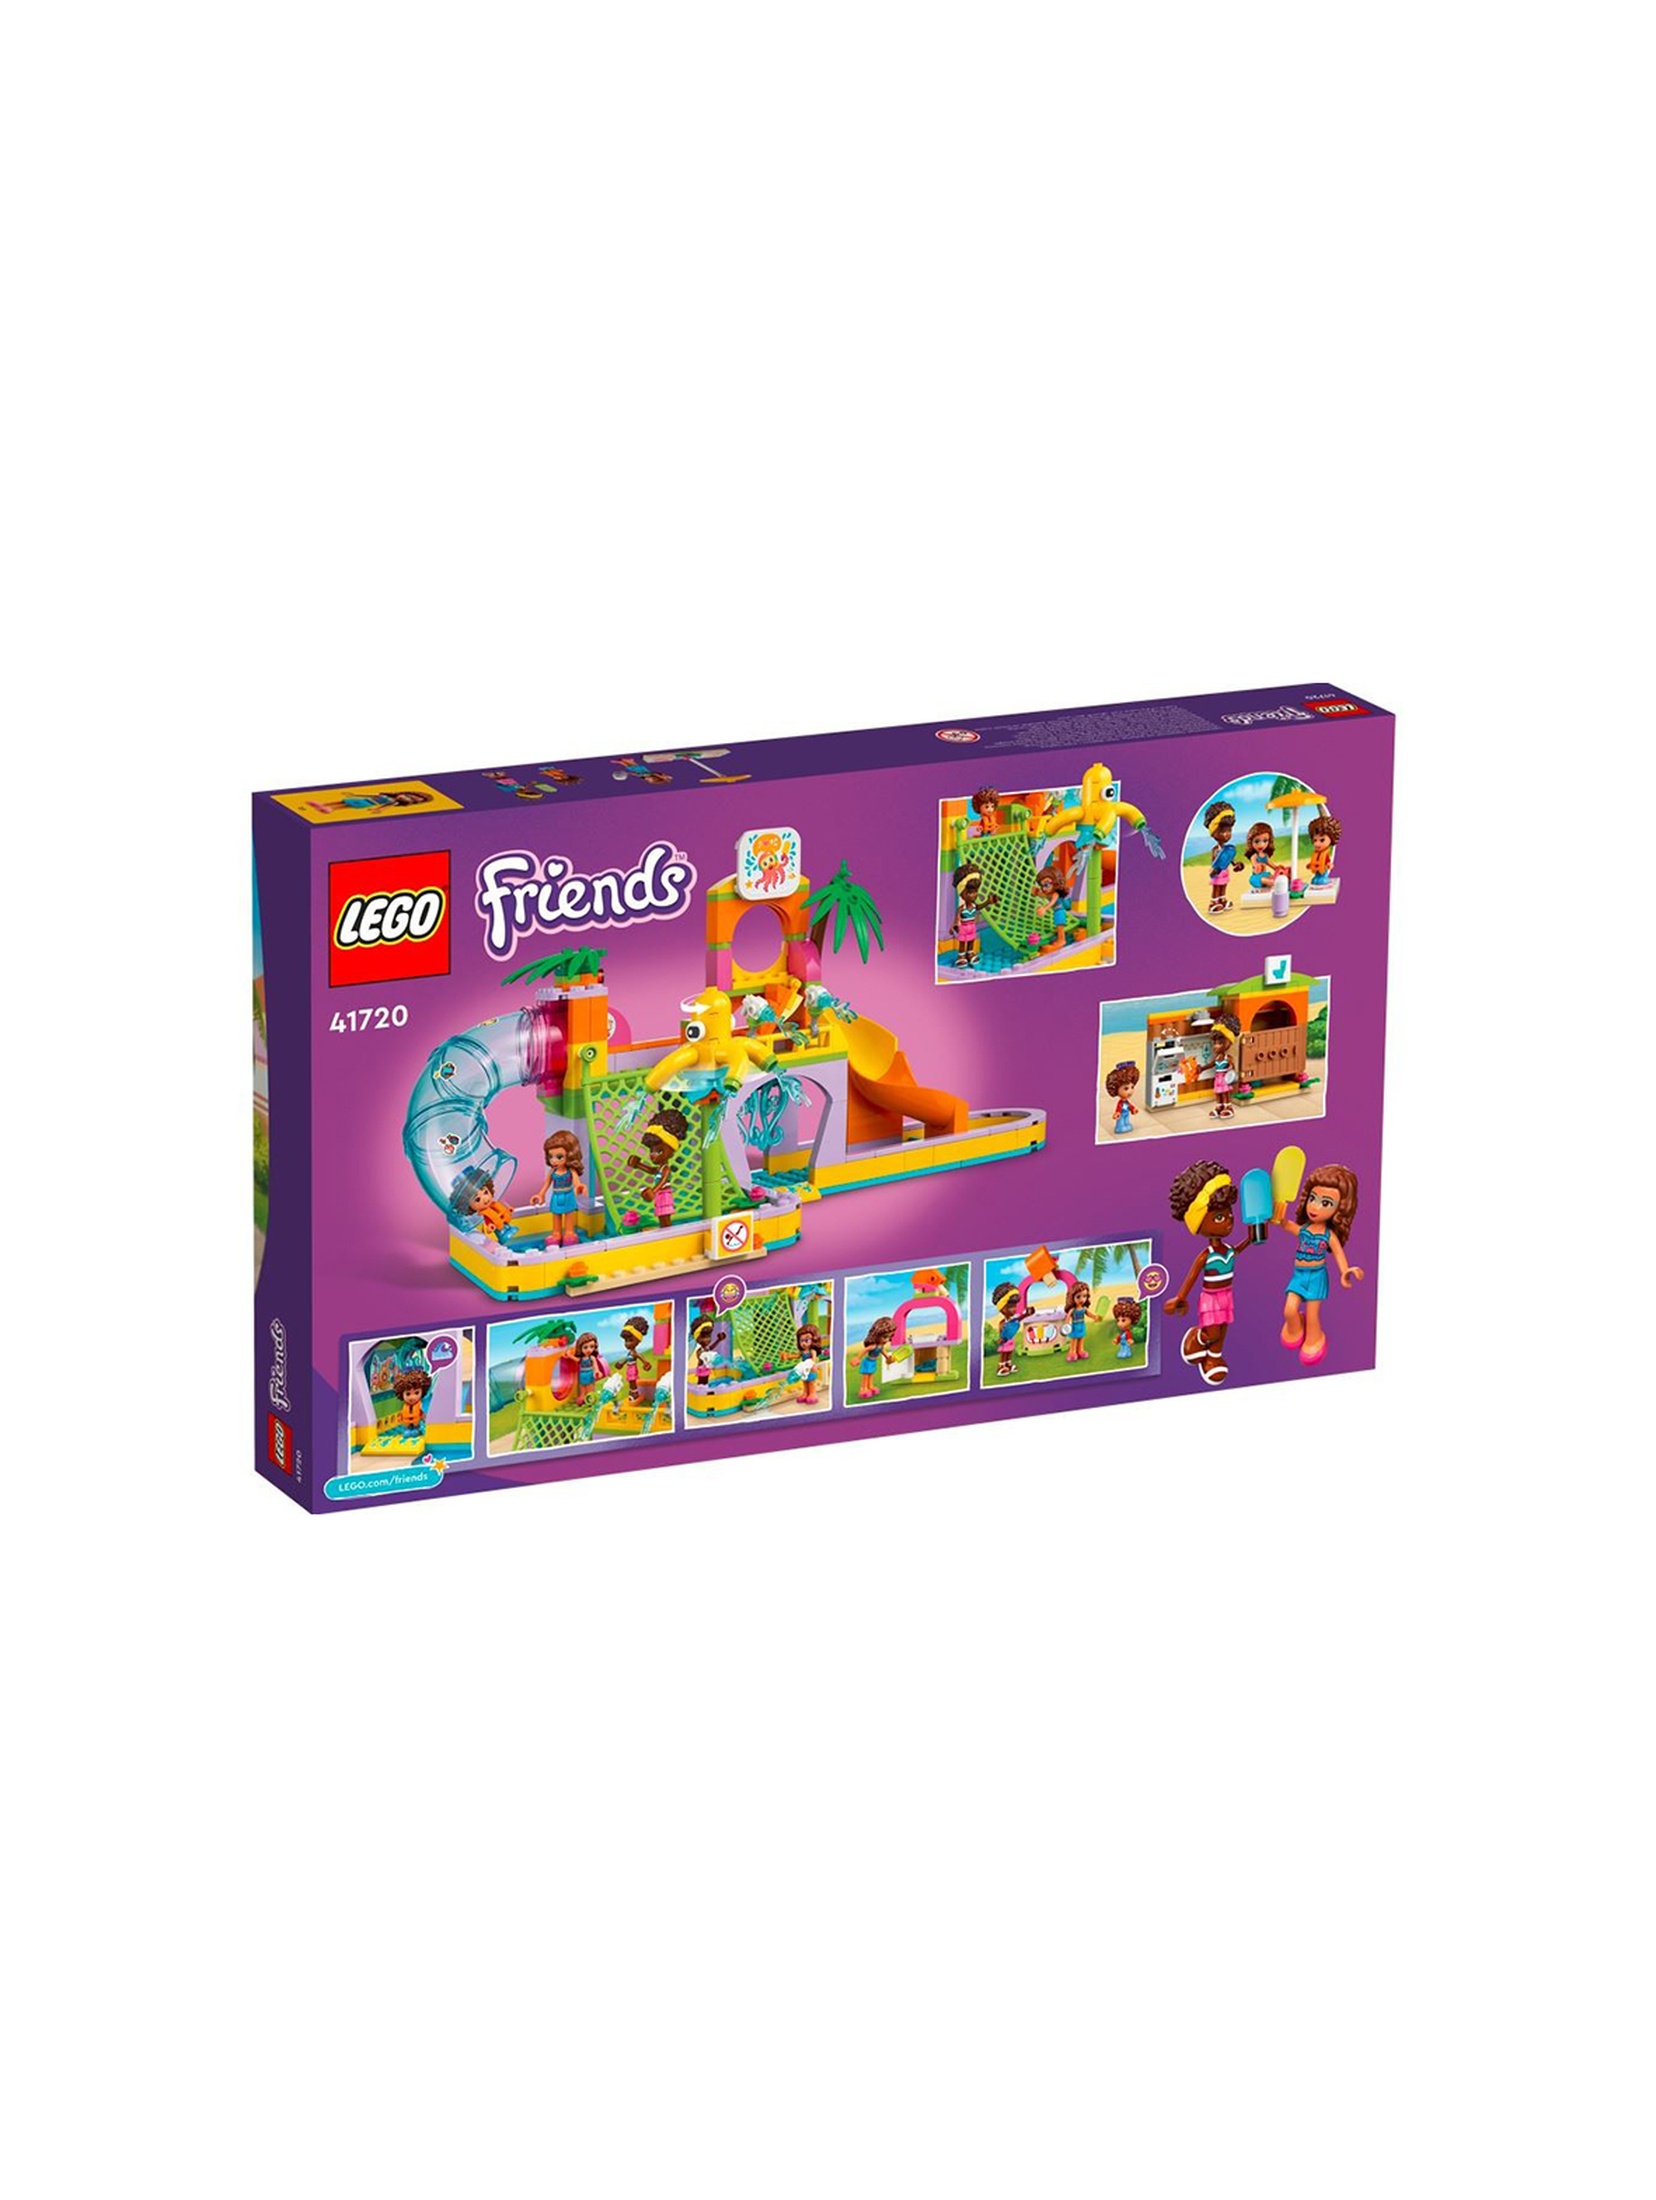 LEGO Friends - Park wodny 41720 - 373 elementy, wiek 6+